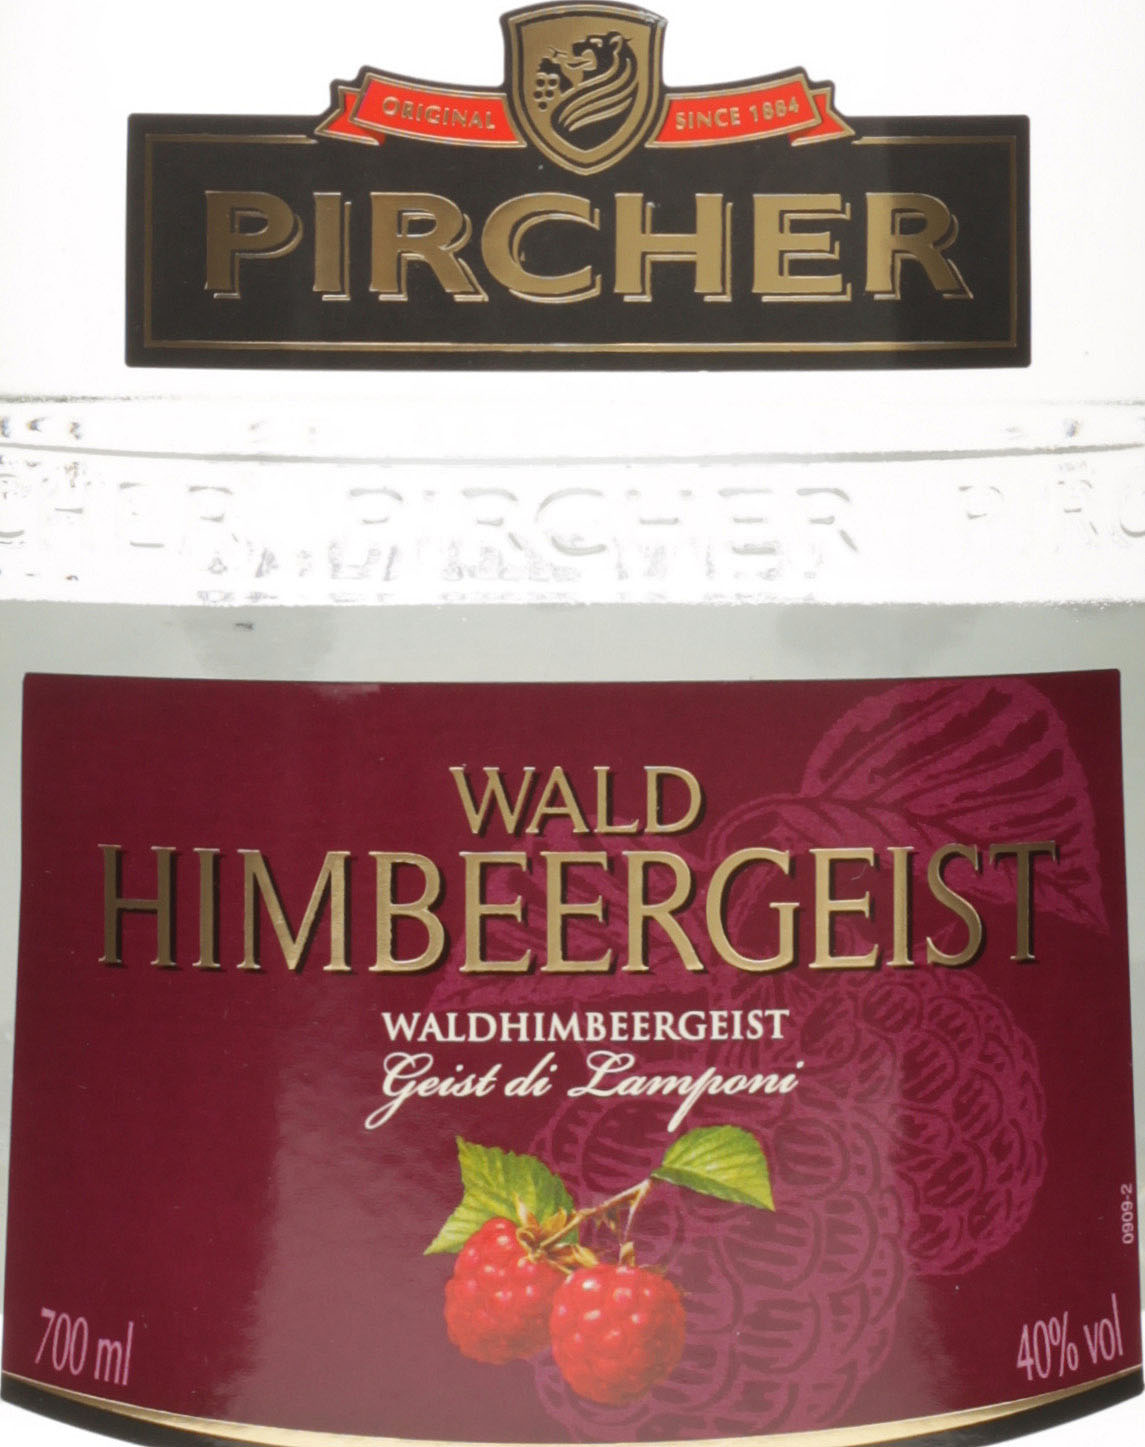 Pircher Waldhimbeergeist 700ml 40%